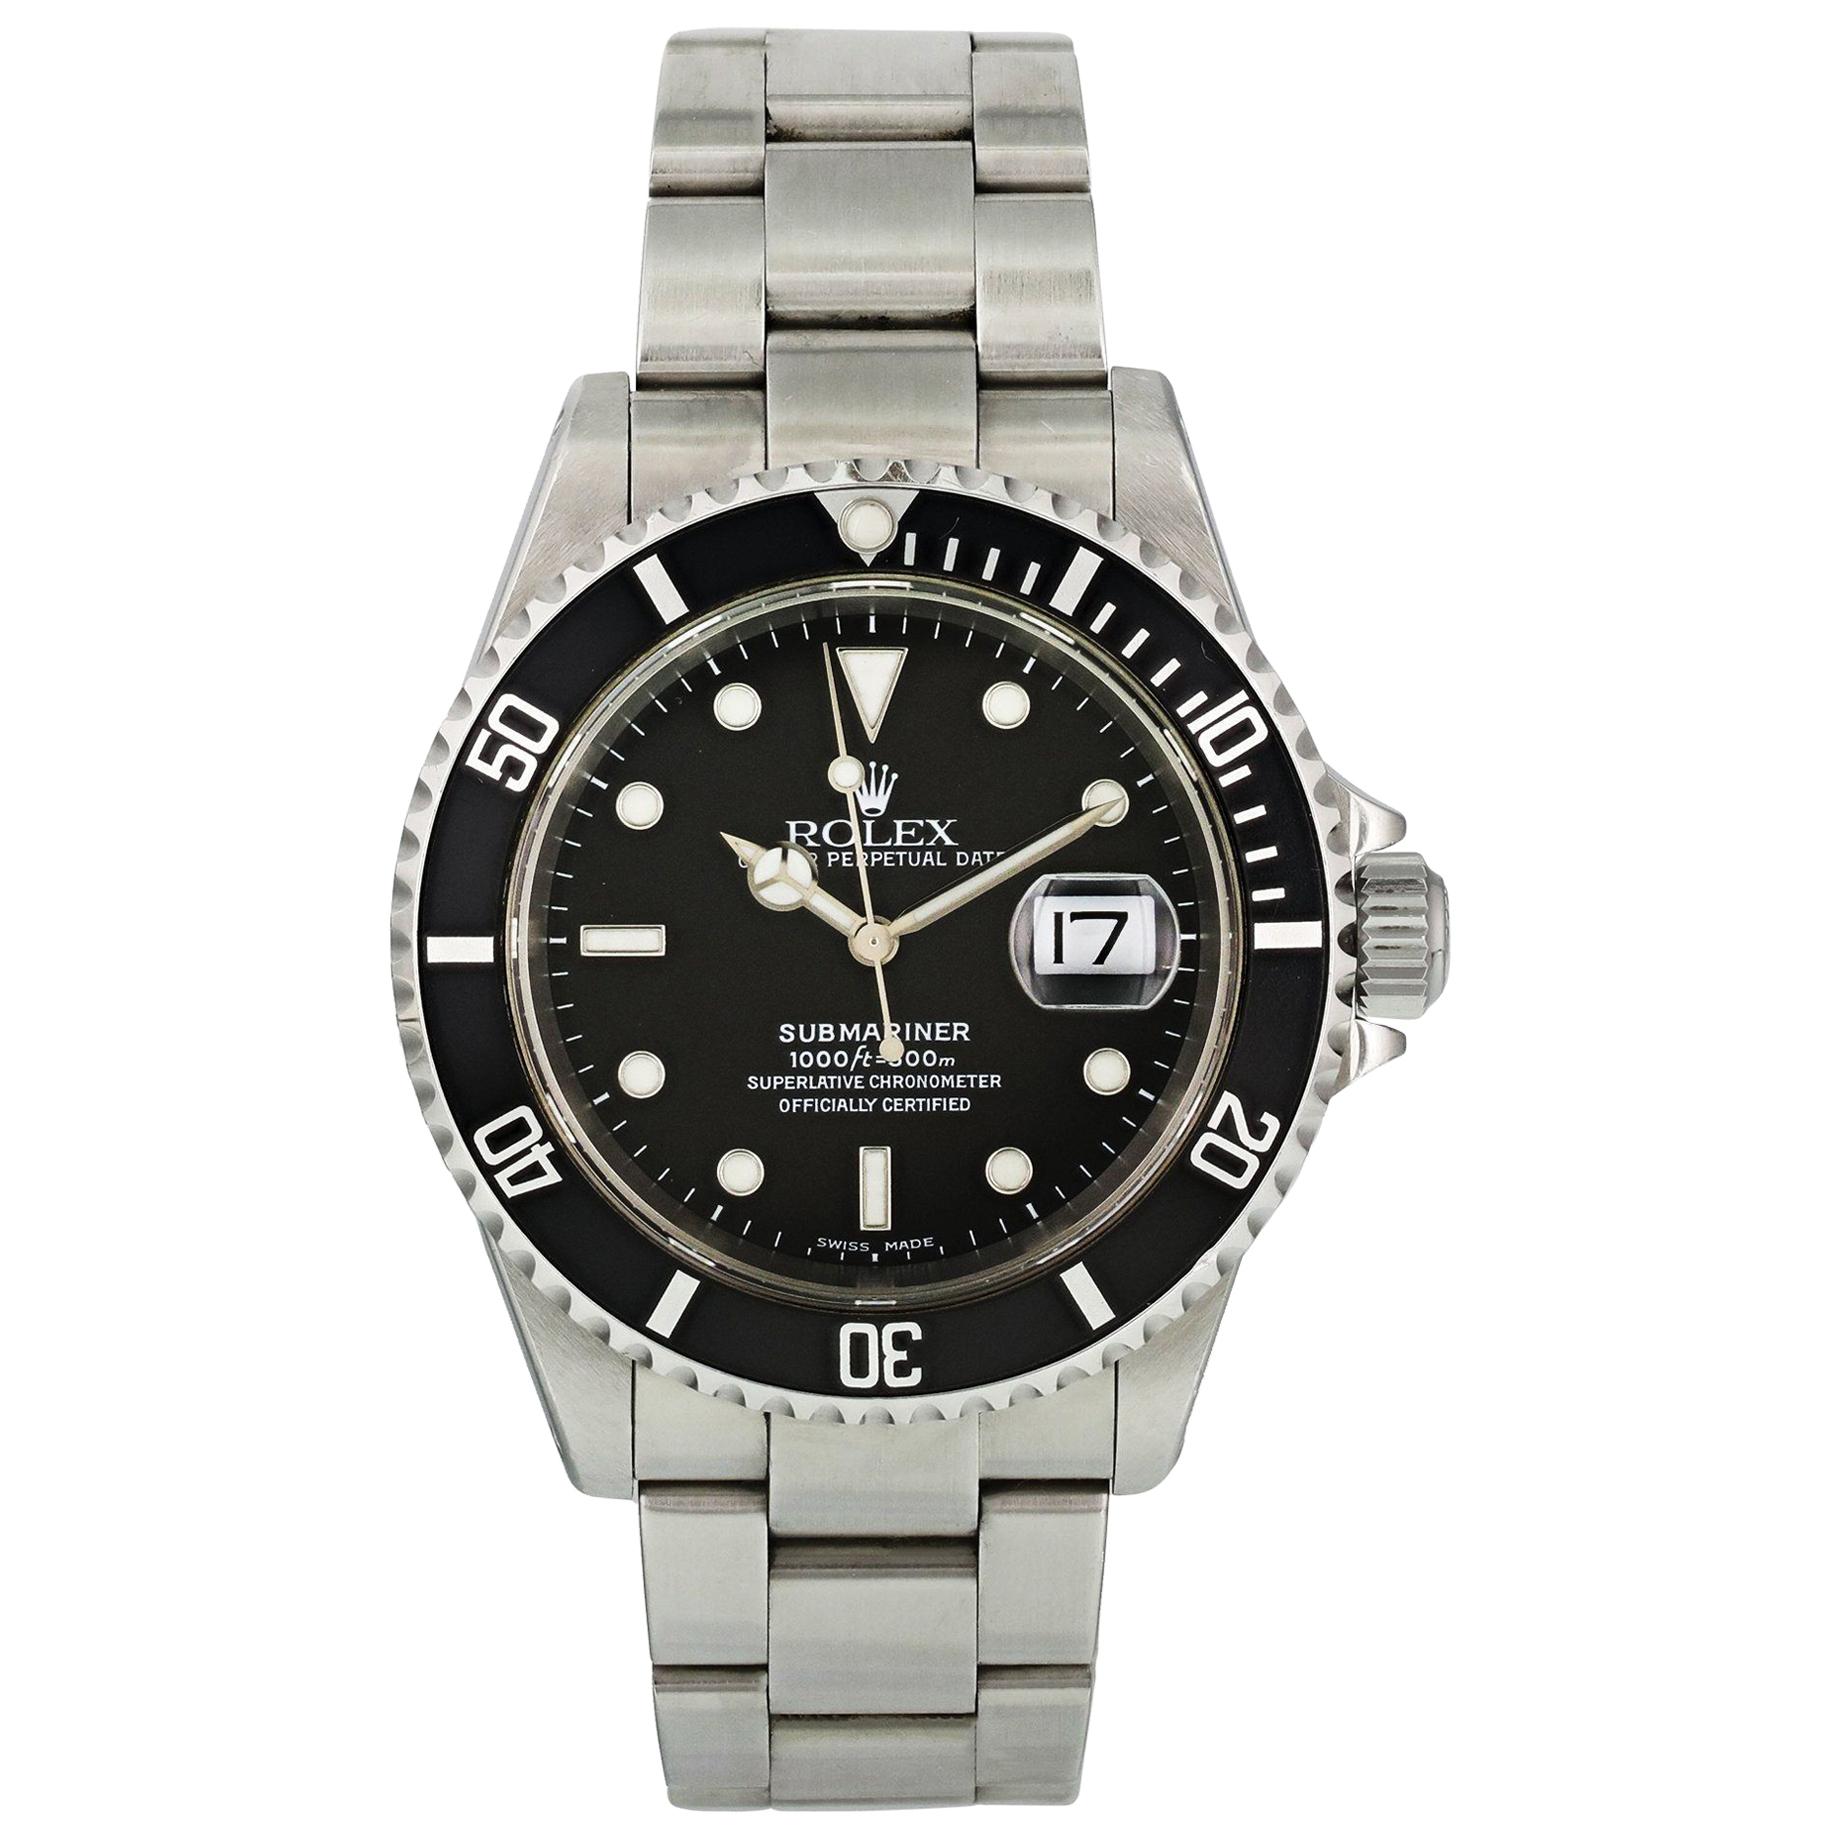 Rolex Submariner 16610 Men's Watch For Sale